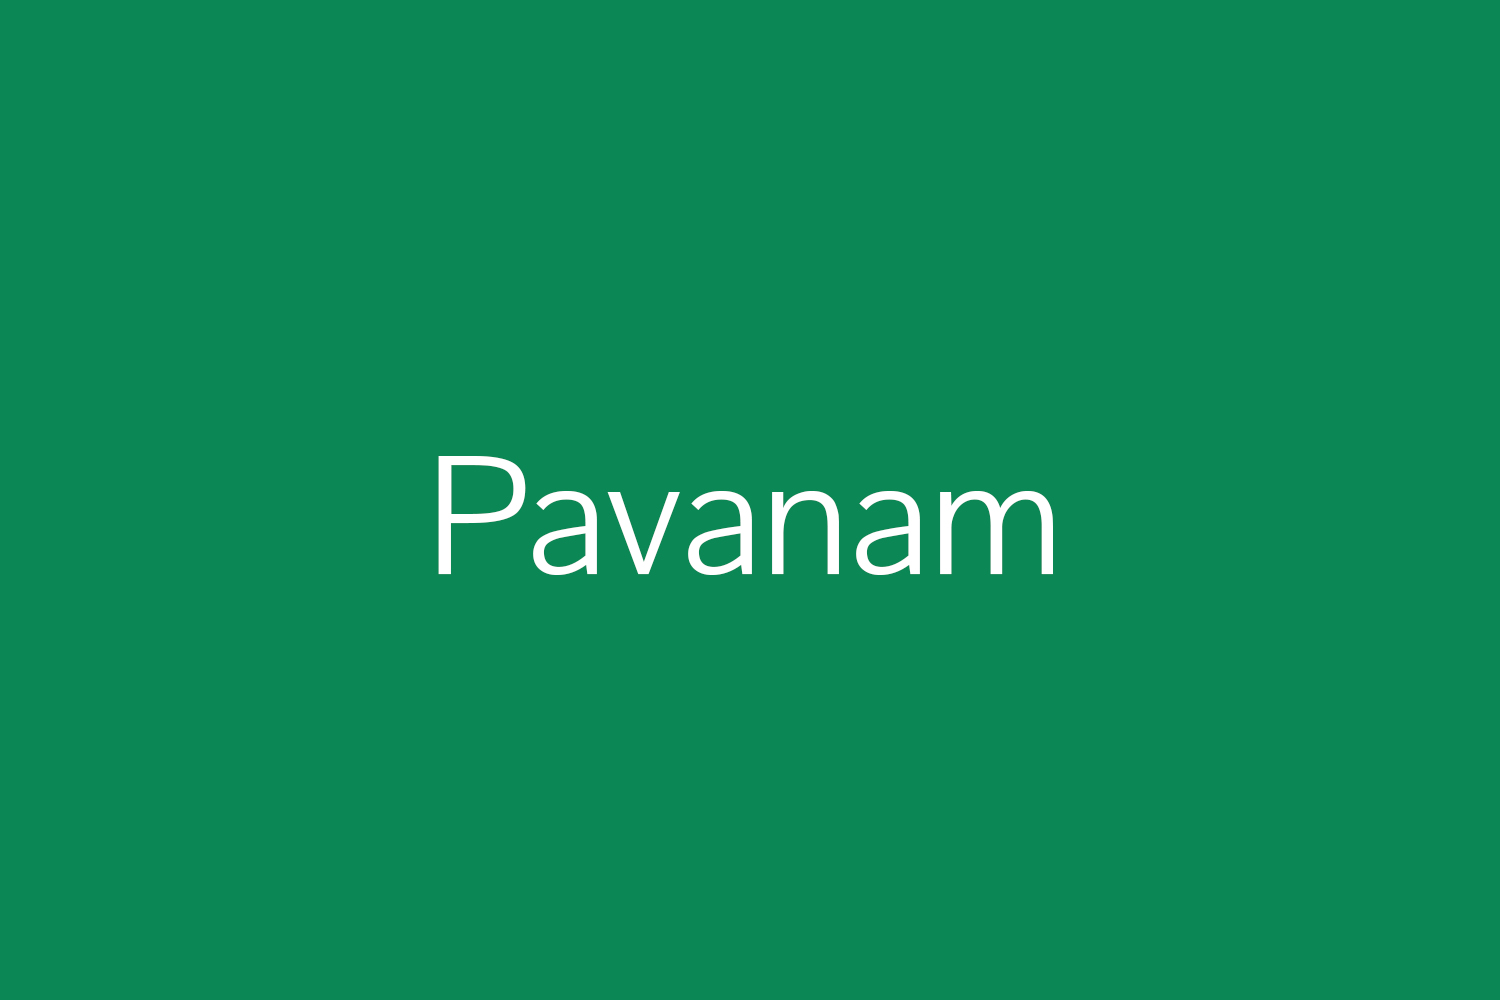 Pavanam